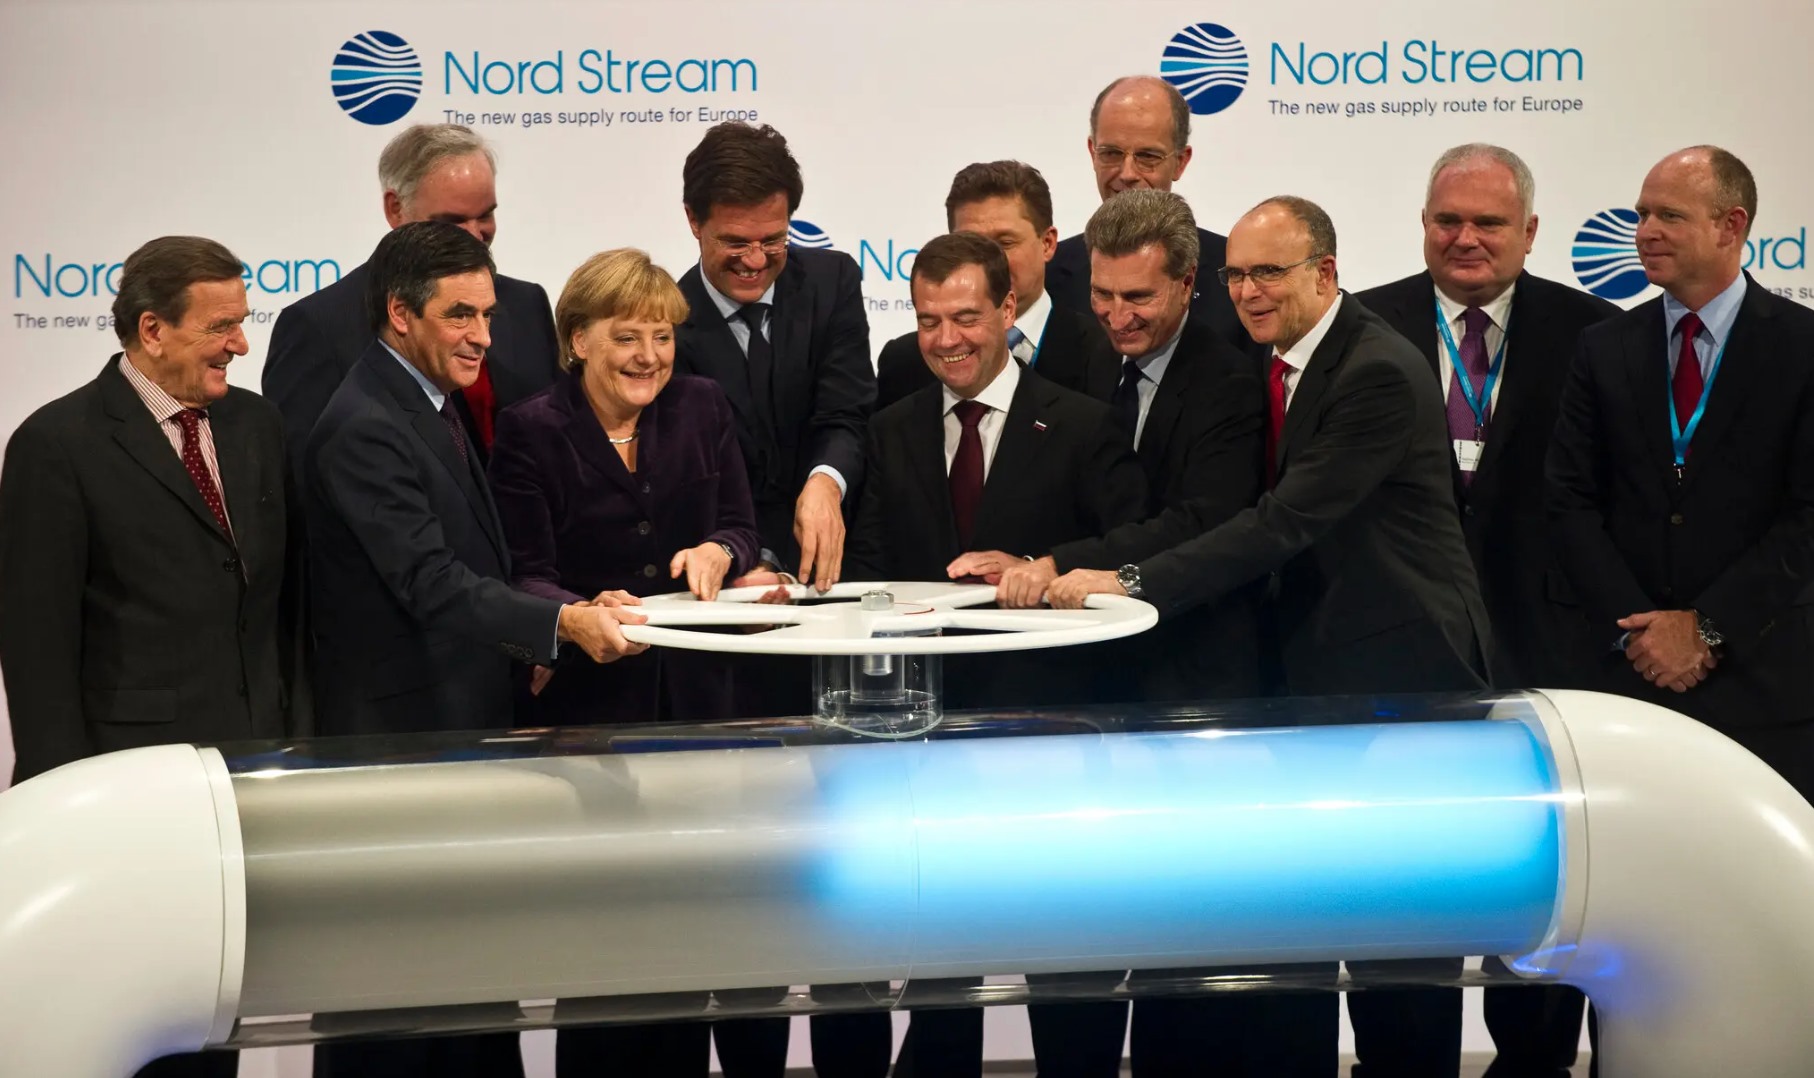 Các nhà lãnh đạo Châu Âu và Nga khai trương Nord Stream 1 vào năm 2011. Trong số đó có cựu Thủ tướng Gerhard Schröder (ngoài cùng trái), Thủ tướng Angela Merkel; ông Erwin Sellering, khi đó là thống đốc của Mecklenburg-Pomerania (ngoài cùng phải). Ảnh: AFP